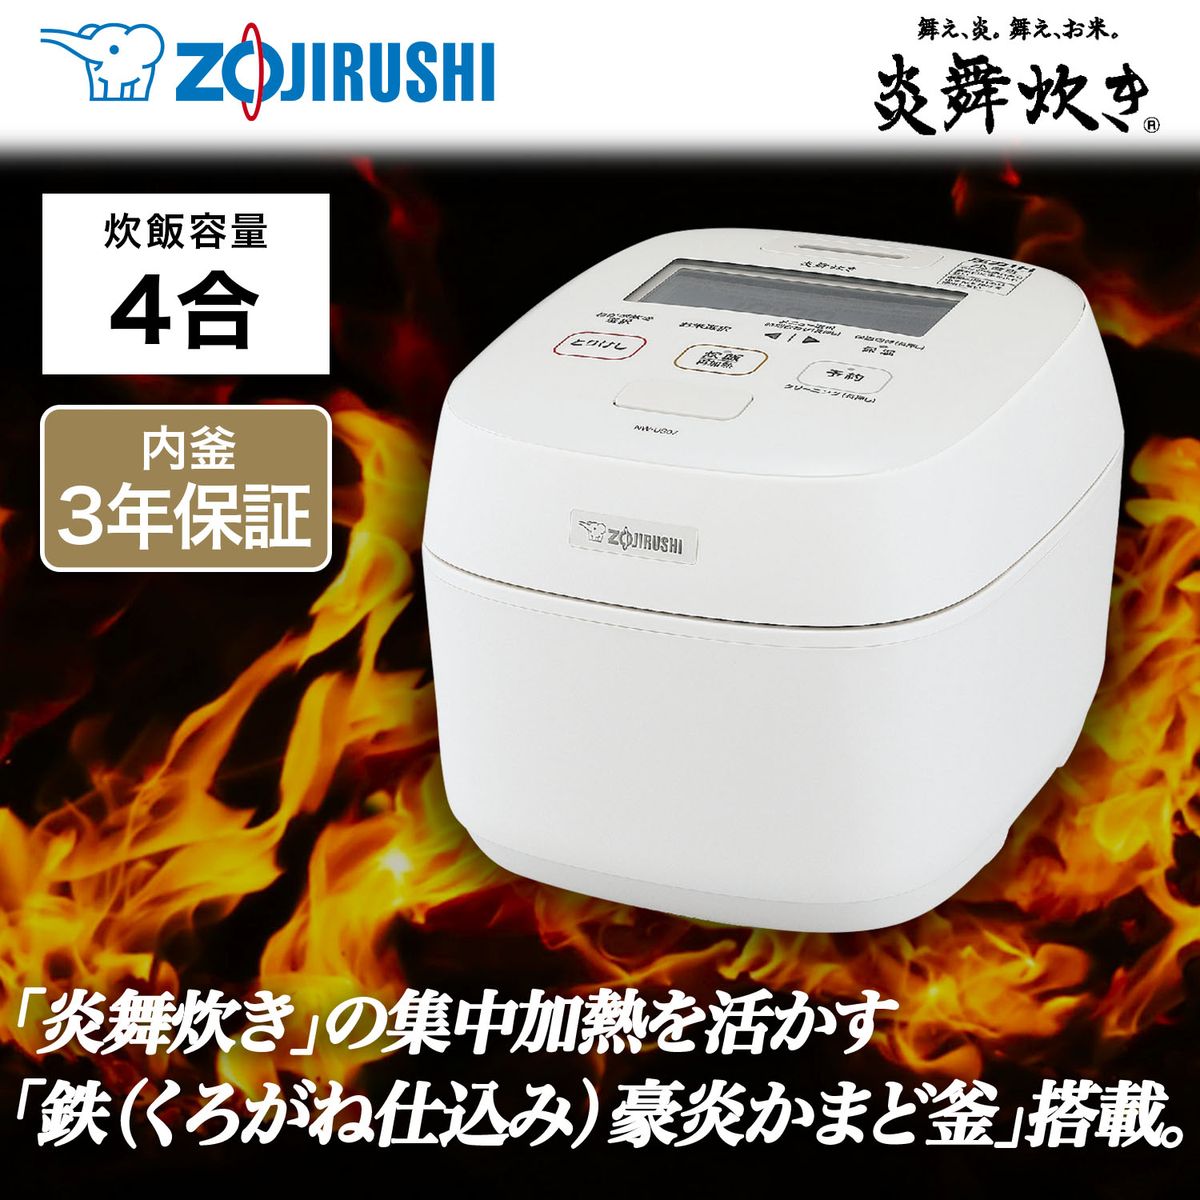 ZOJIRUSHI 炊飯器 圧力IH